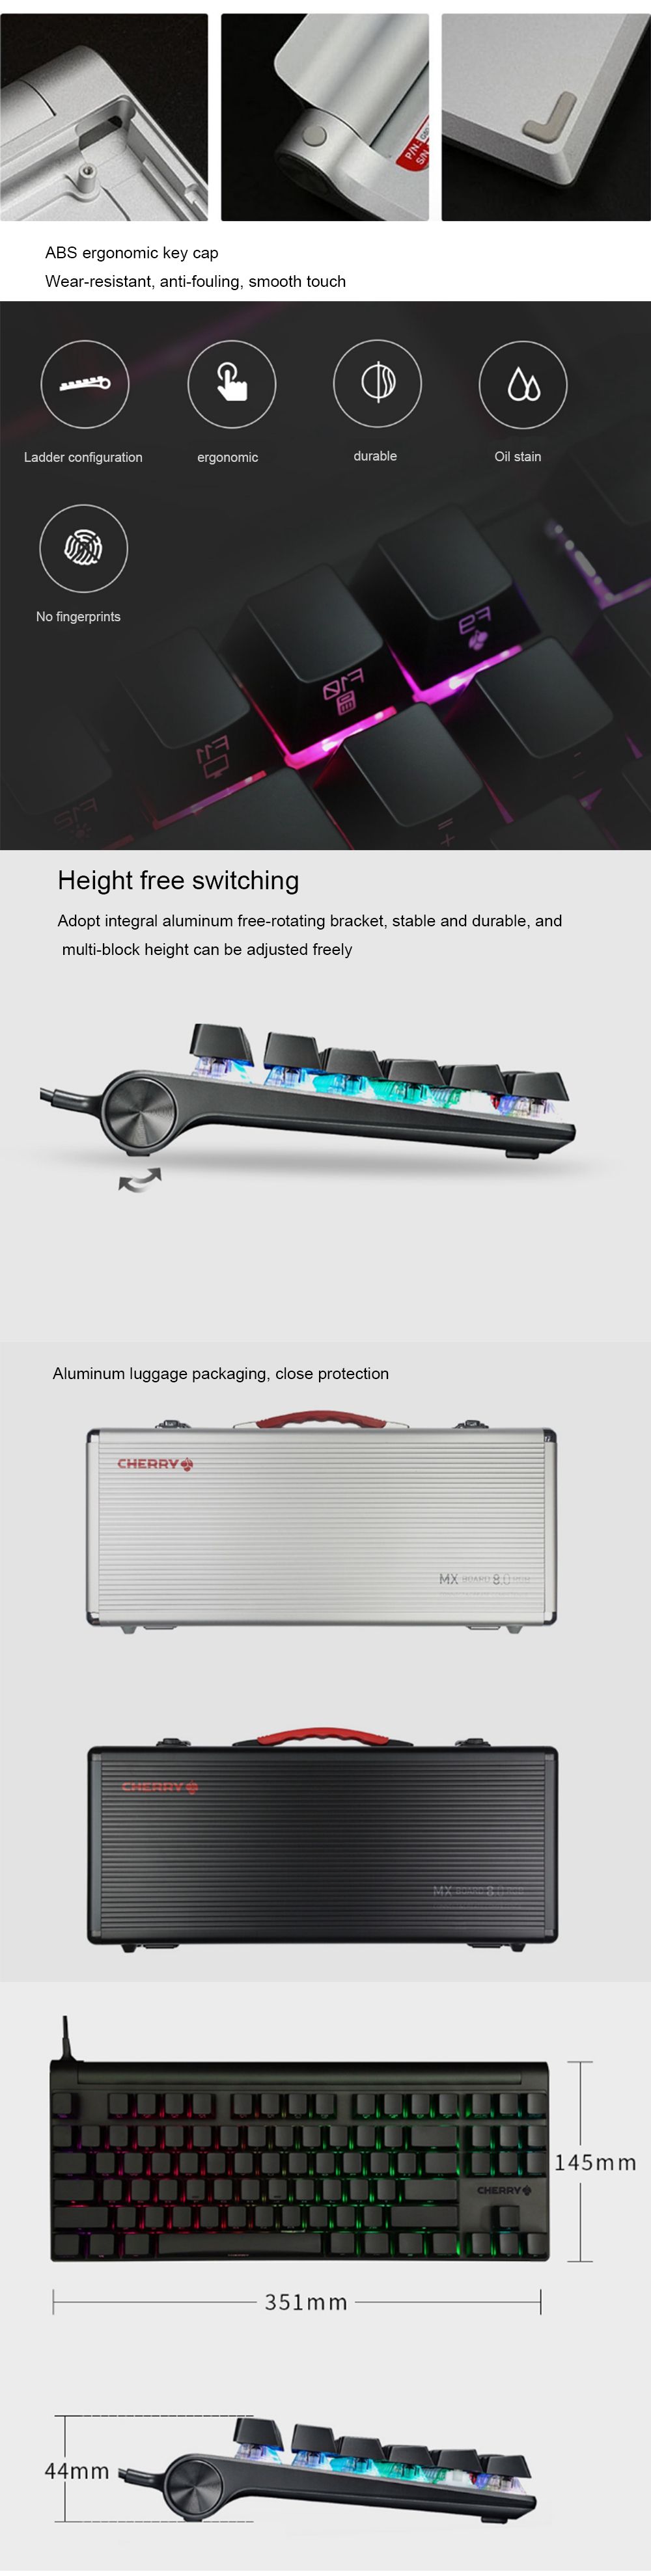 CHERRY-MX80-87-Keys-NKRO-USB-20-Wired-RGB-Backlit-Cherry-MX-Switch-Mechanical-Keyboard-1581076